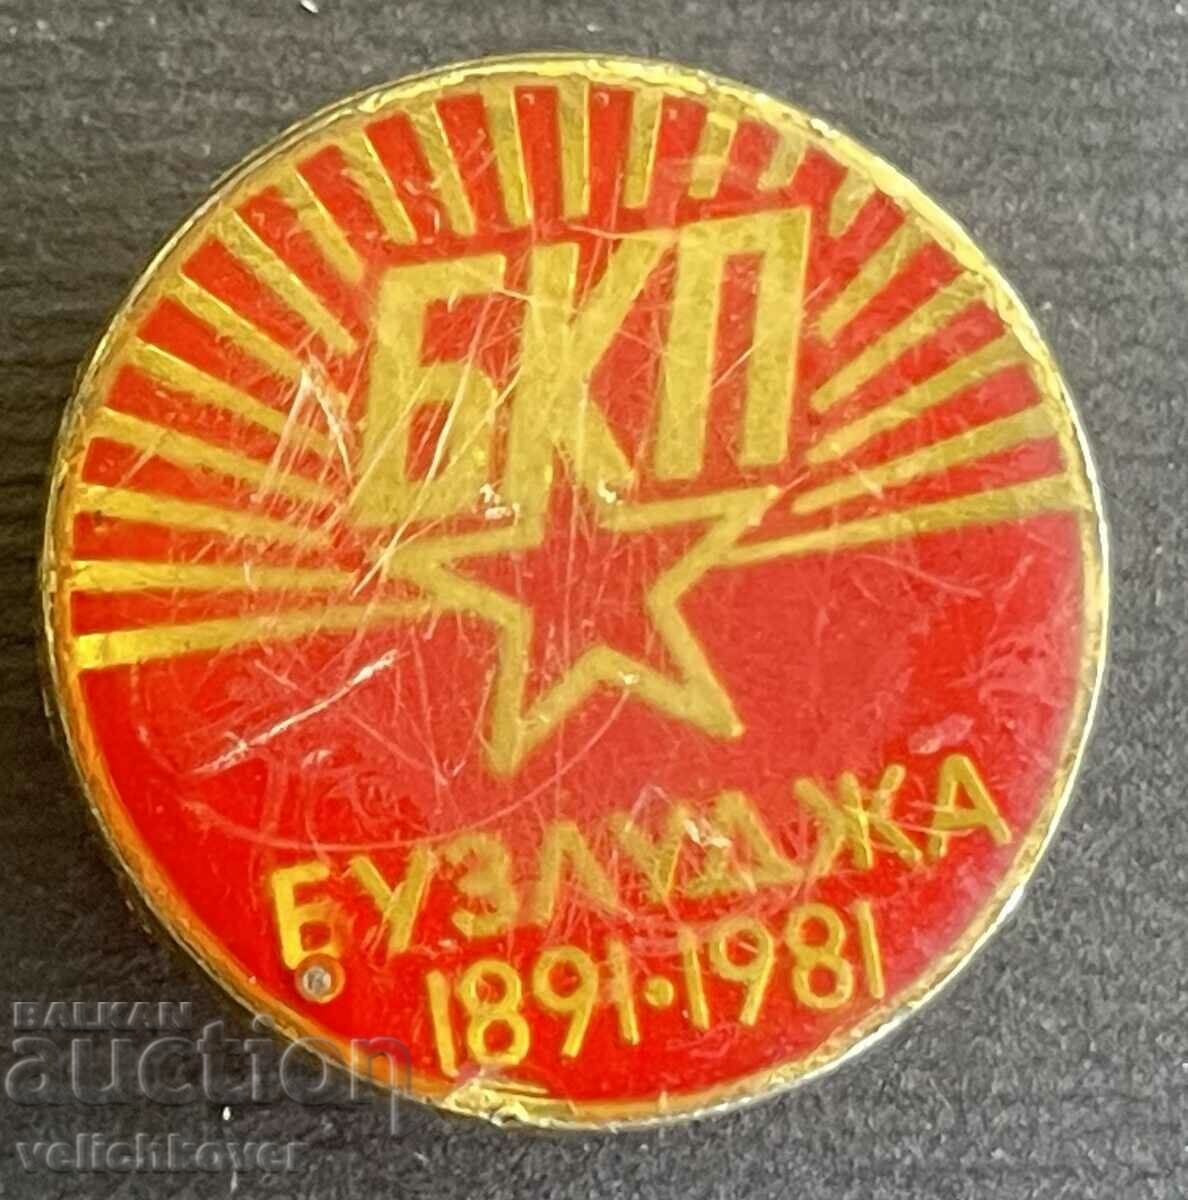 35886 България знак 90г. Основаване на БКП Бузлуджа 1891-198